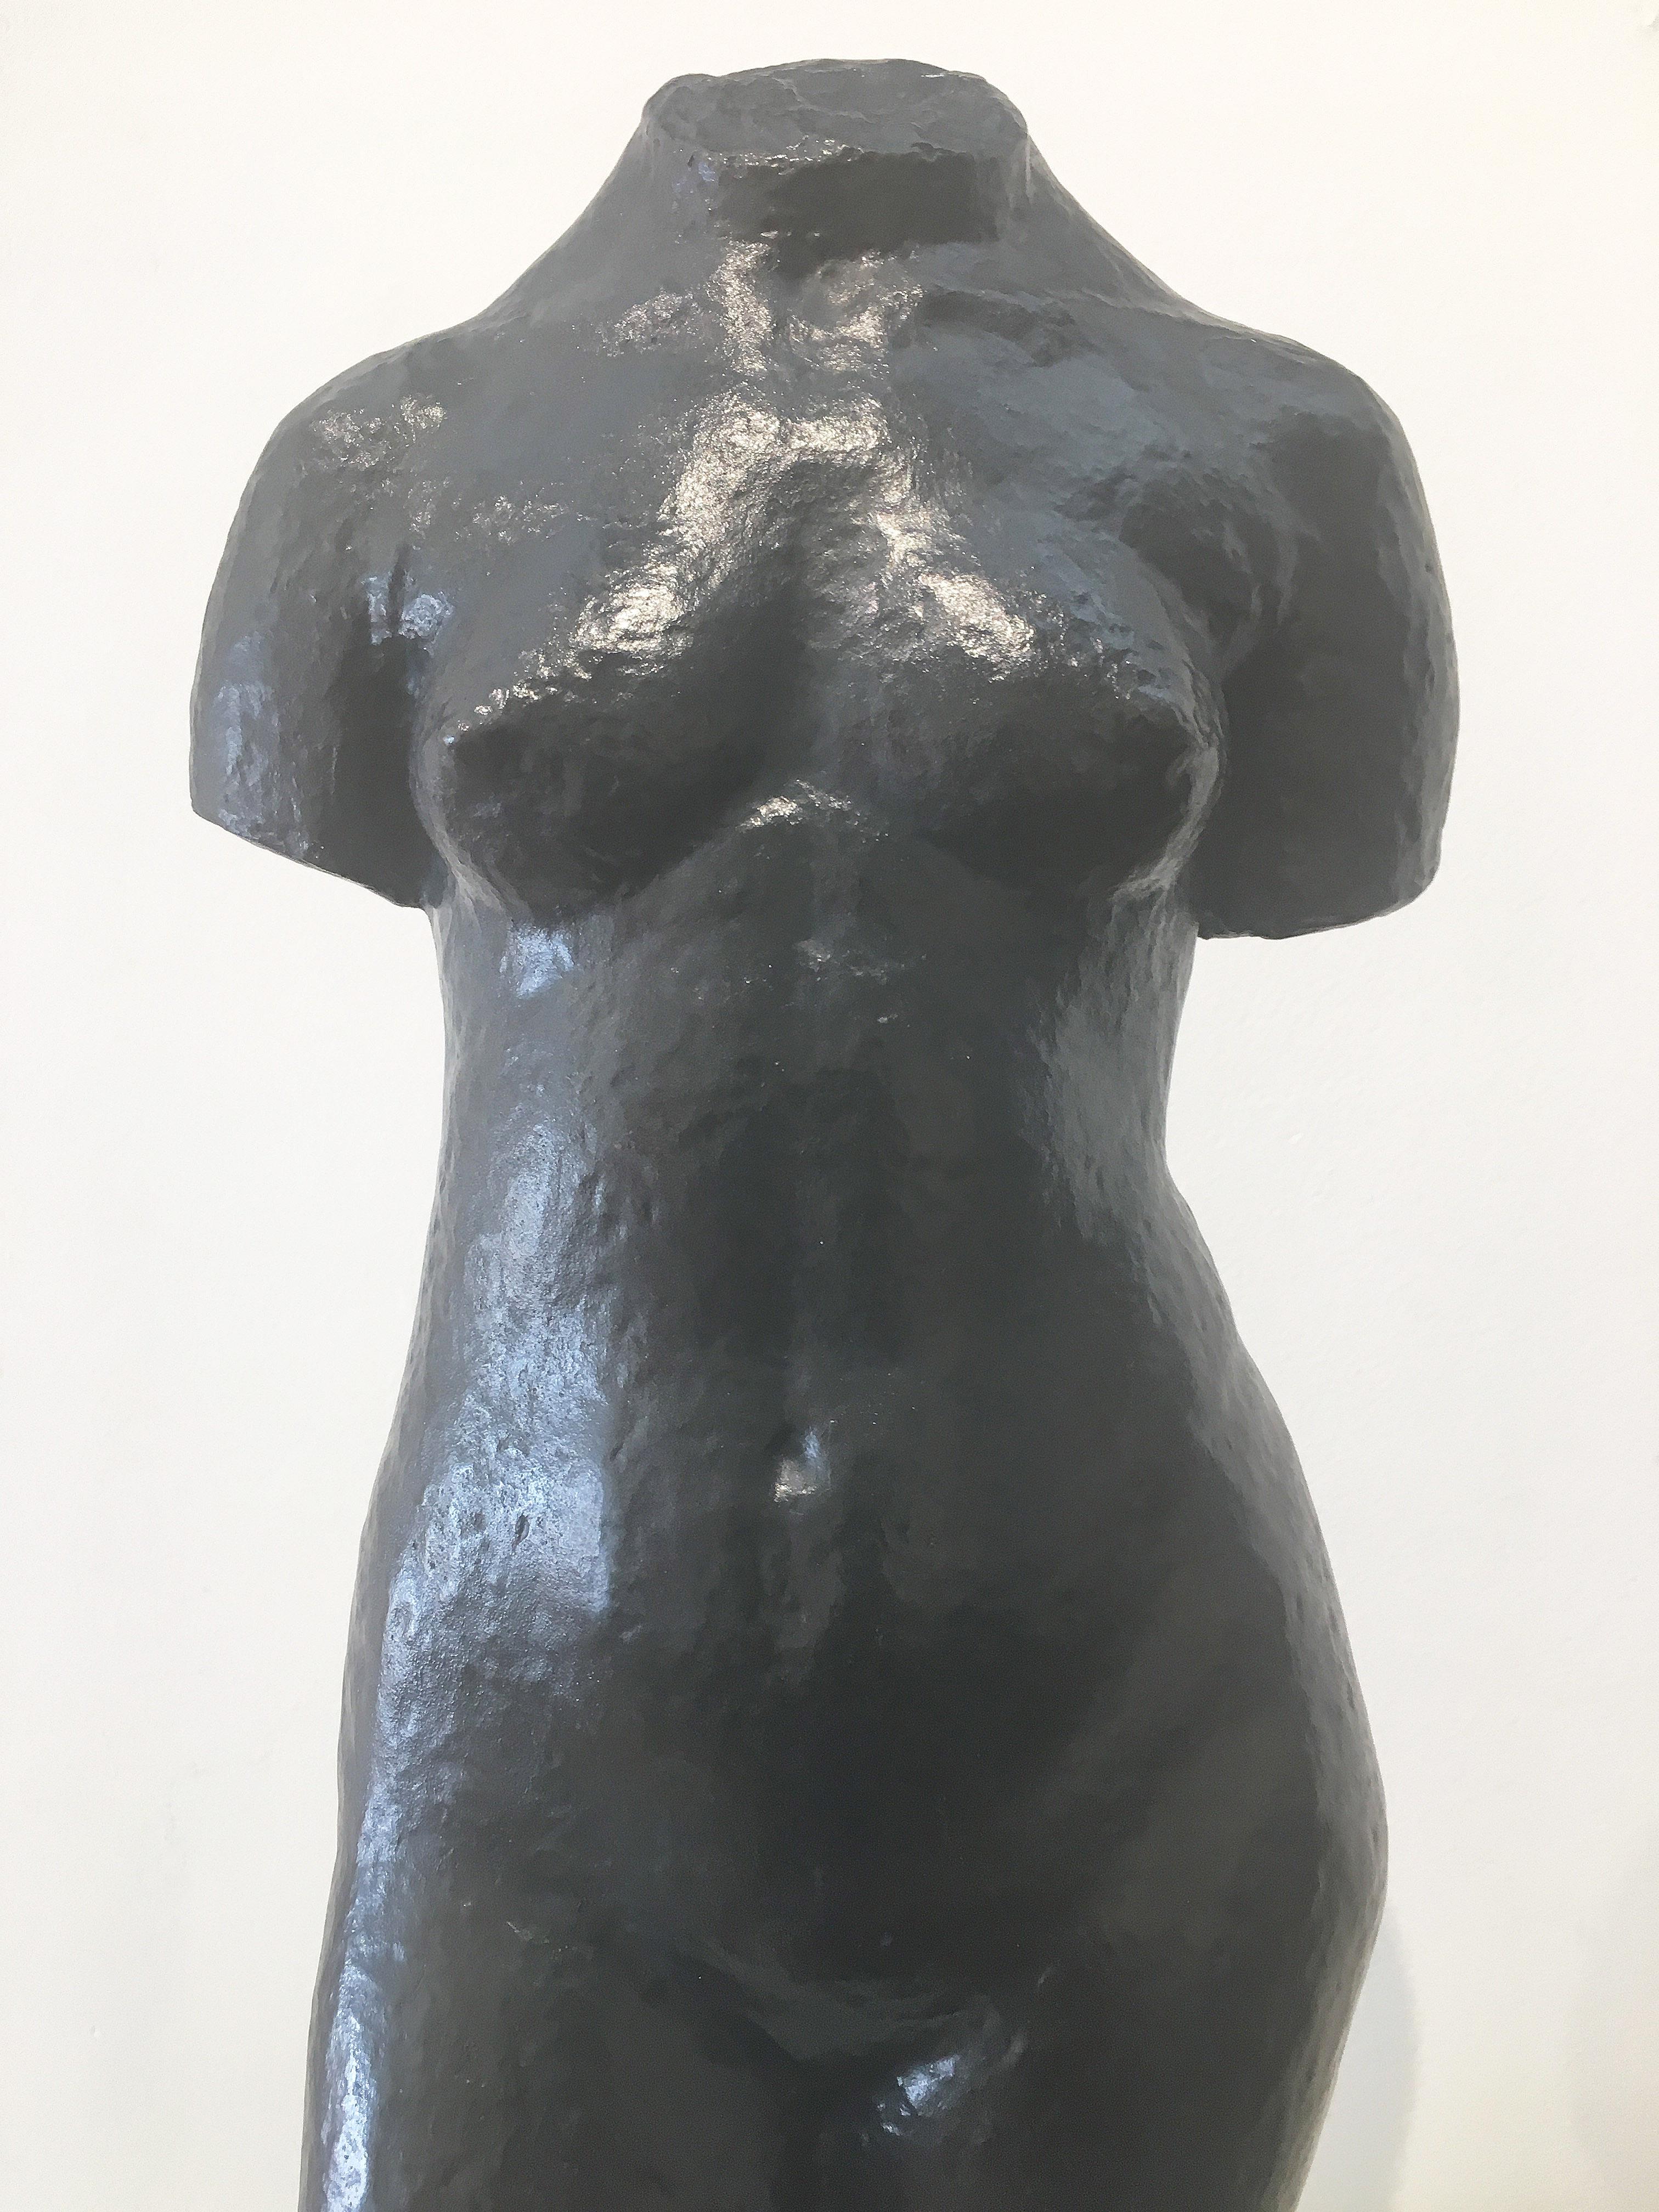 Lulu Lapalue - Gold Nude Sculpture by Robert Wlérick 